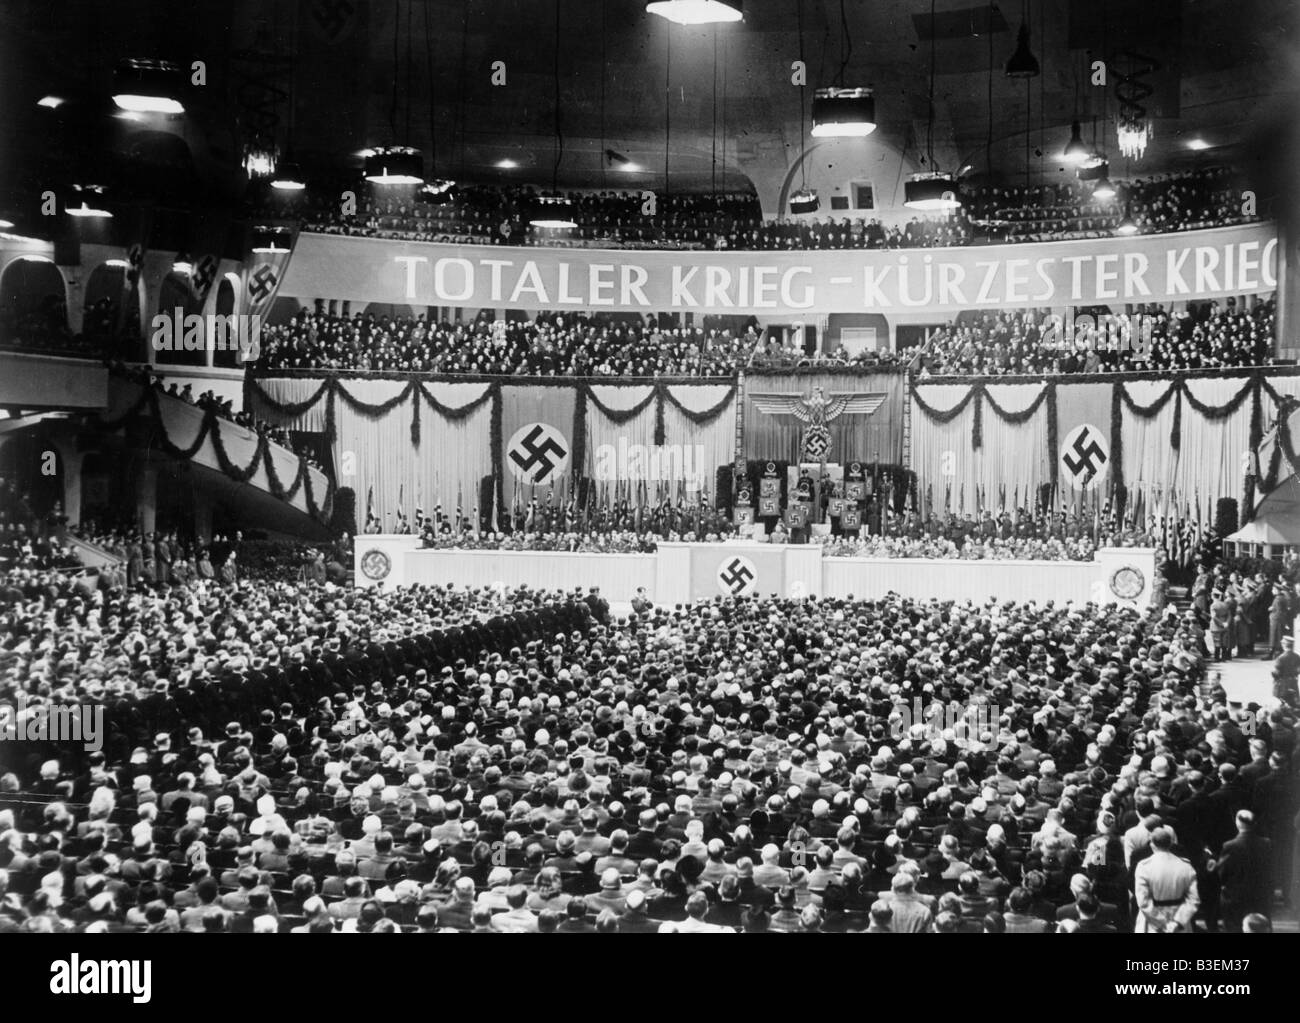 Sportpalast/Goebbels Speech /Total War. Stock Photo